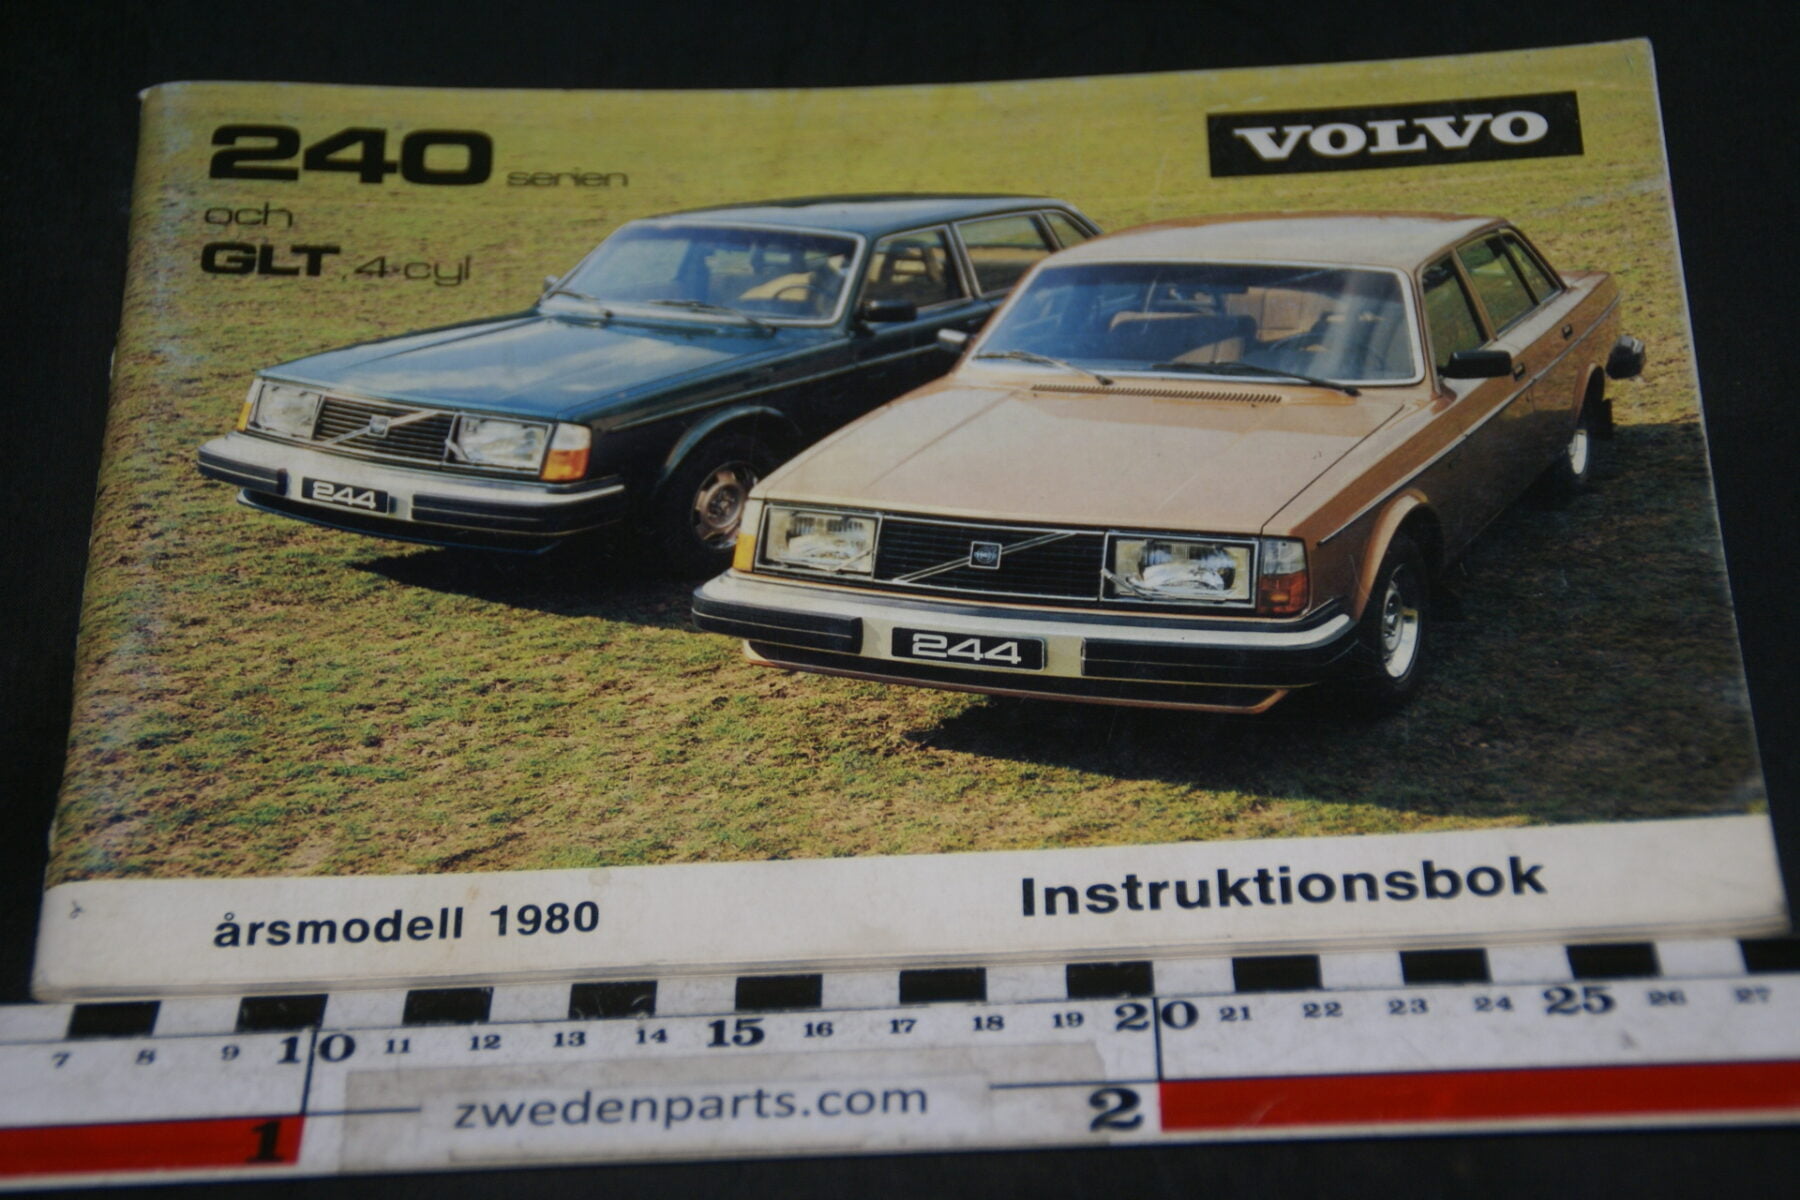 DSC07022 1979 origineel Volvo 240  instruktionsbok TP 1880-1 Svenskt